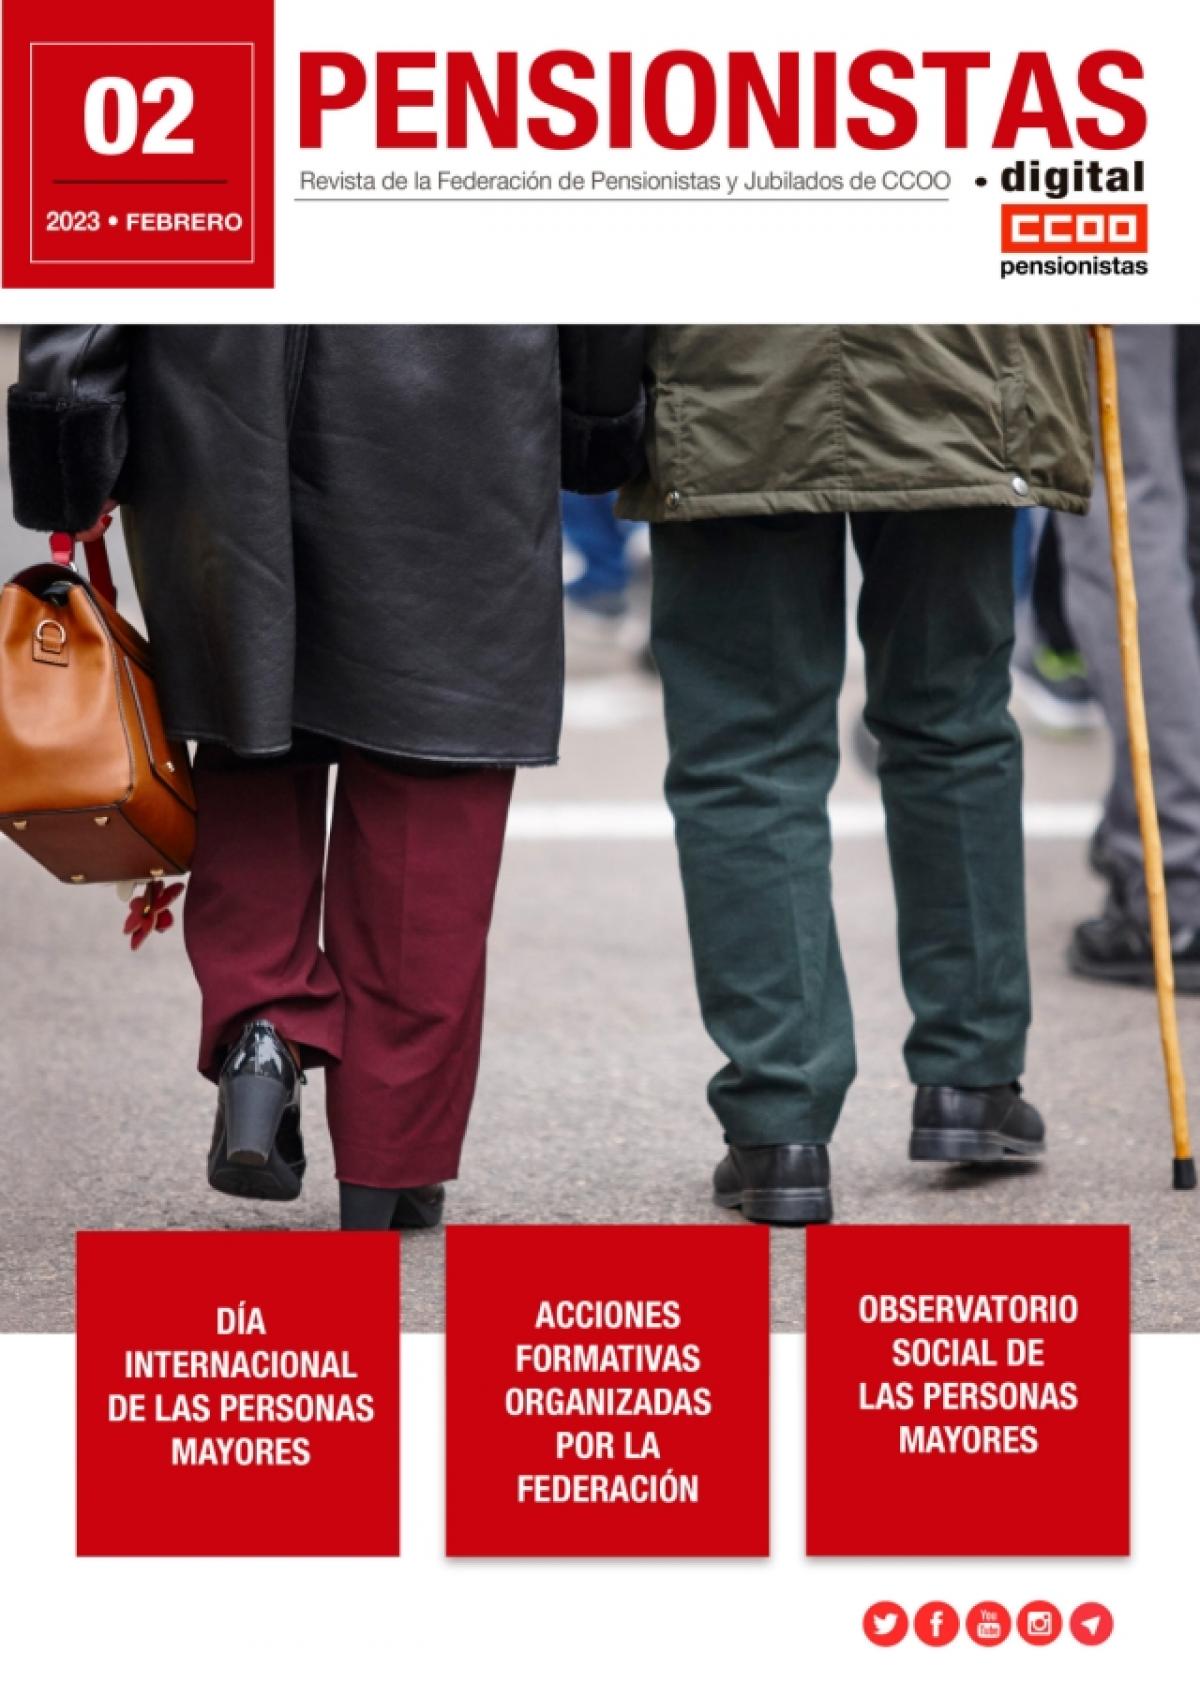 Revista Digital “Pensionistas”, de Febrero de 2023